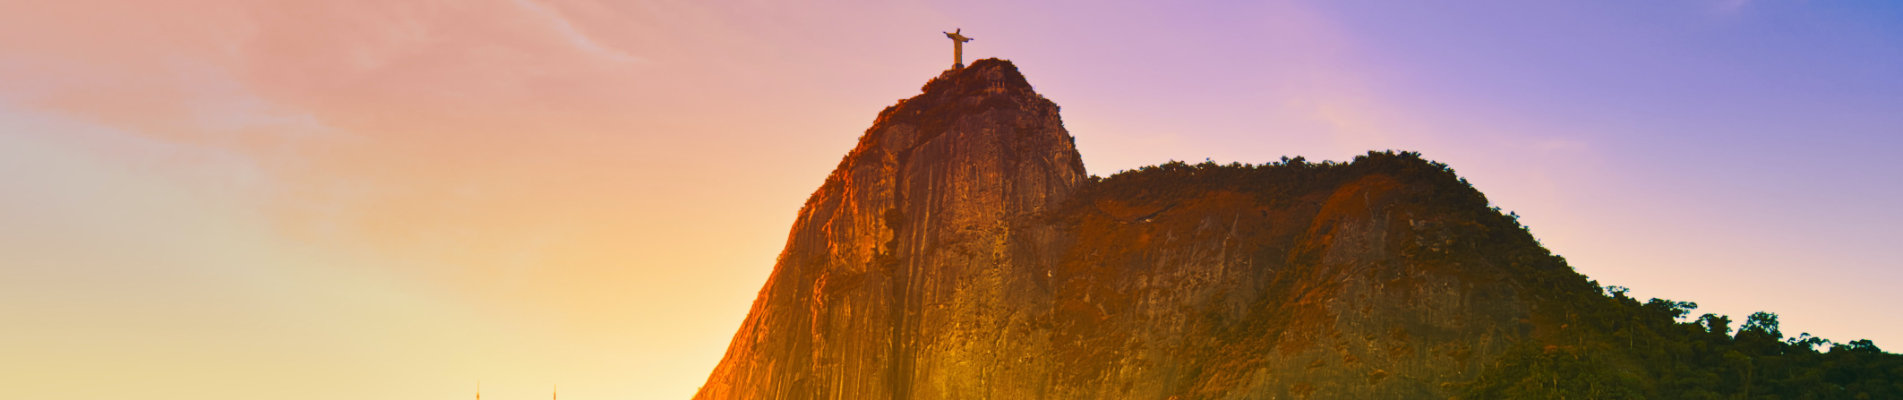 Viagens pelo Brasil Melhores destinos